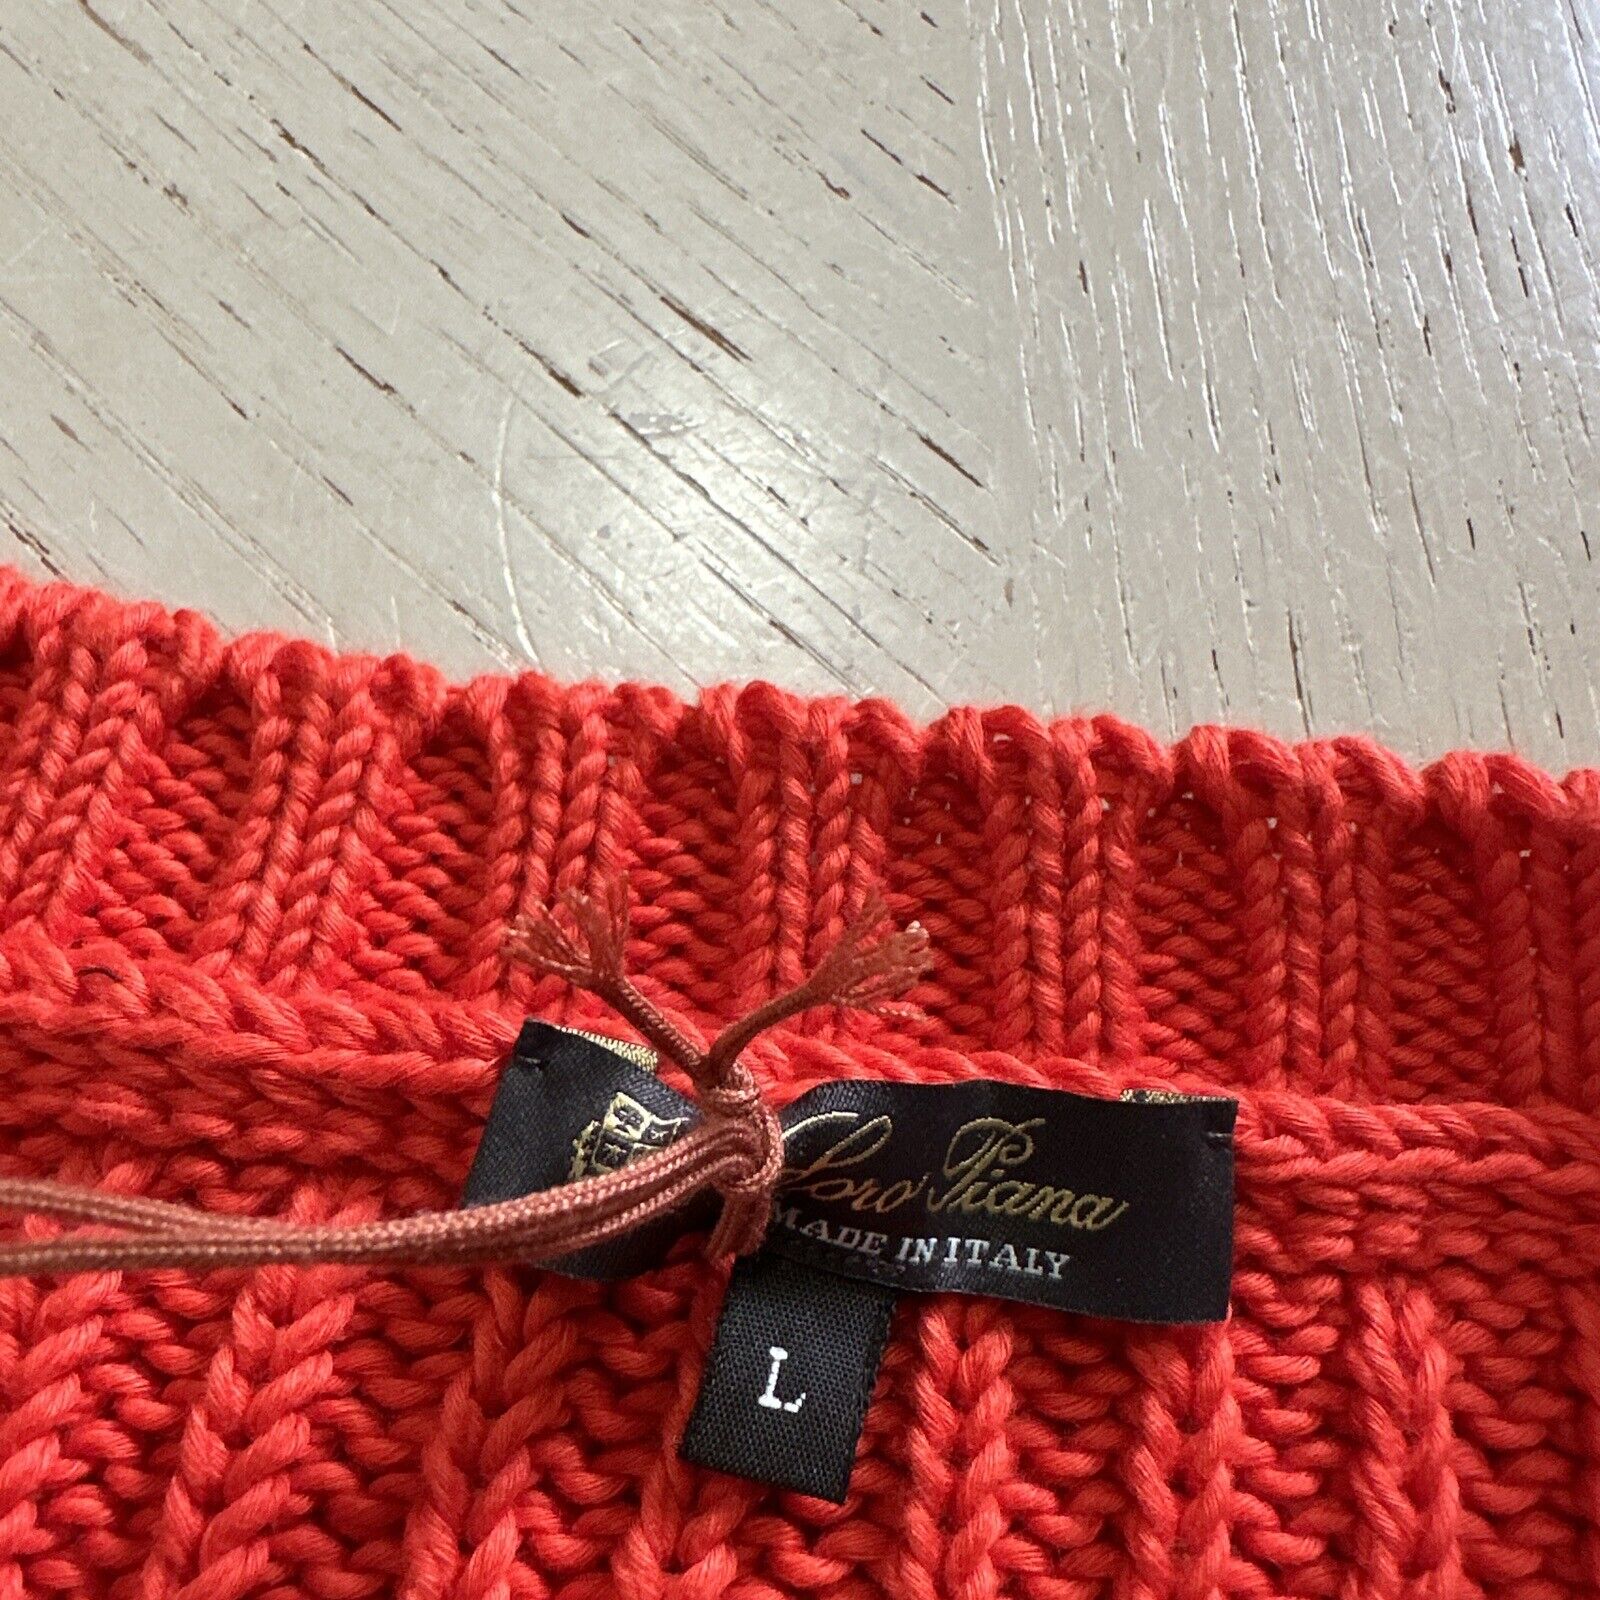 New $3350 Loro Piana Women Valencia Cabled Cotton Sweater Orange Size L Italy